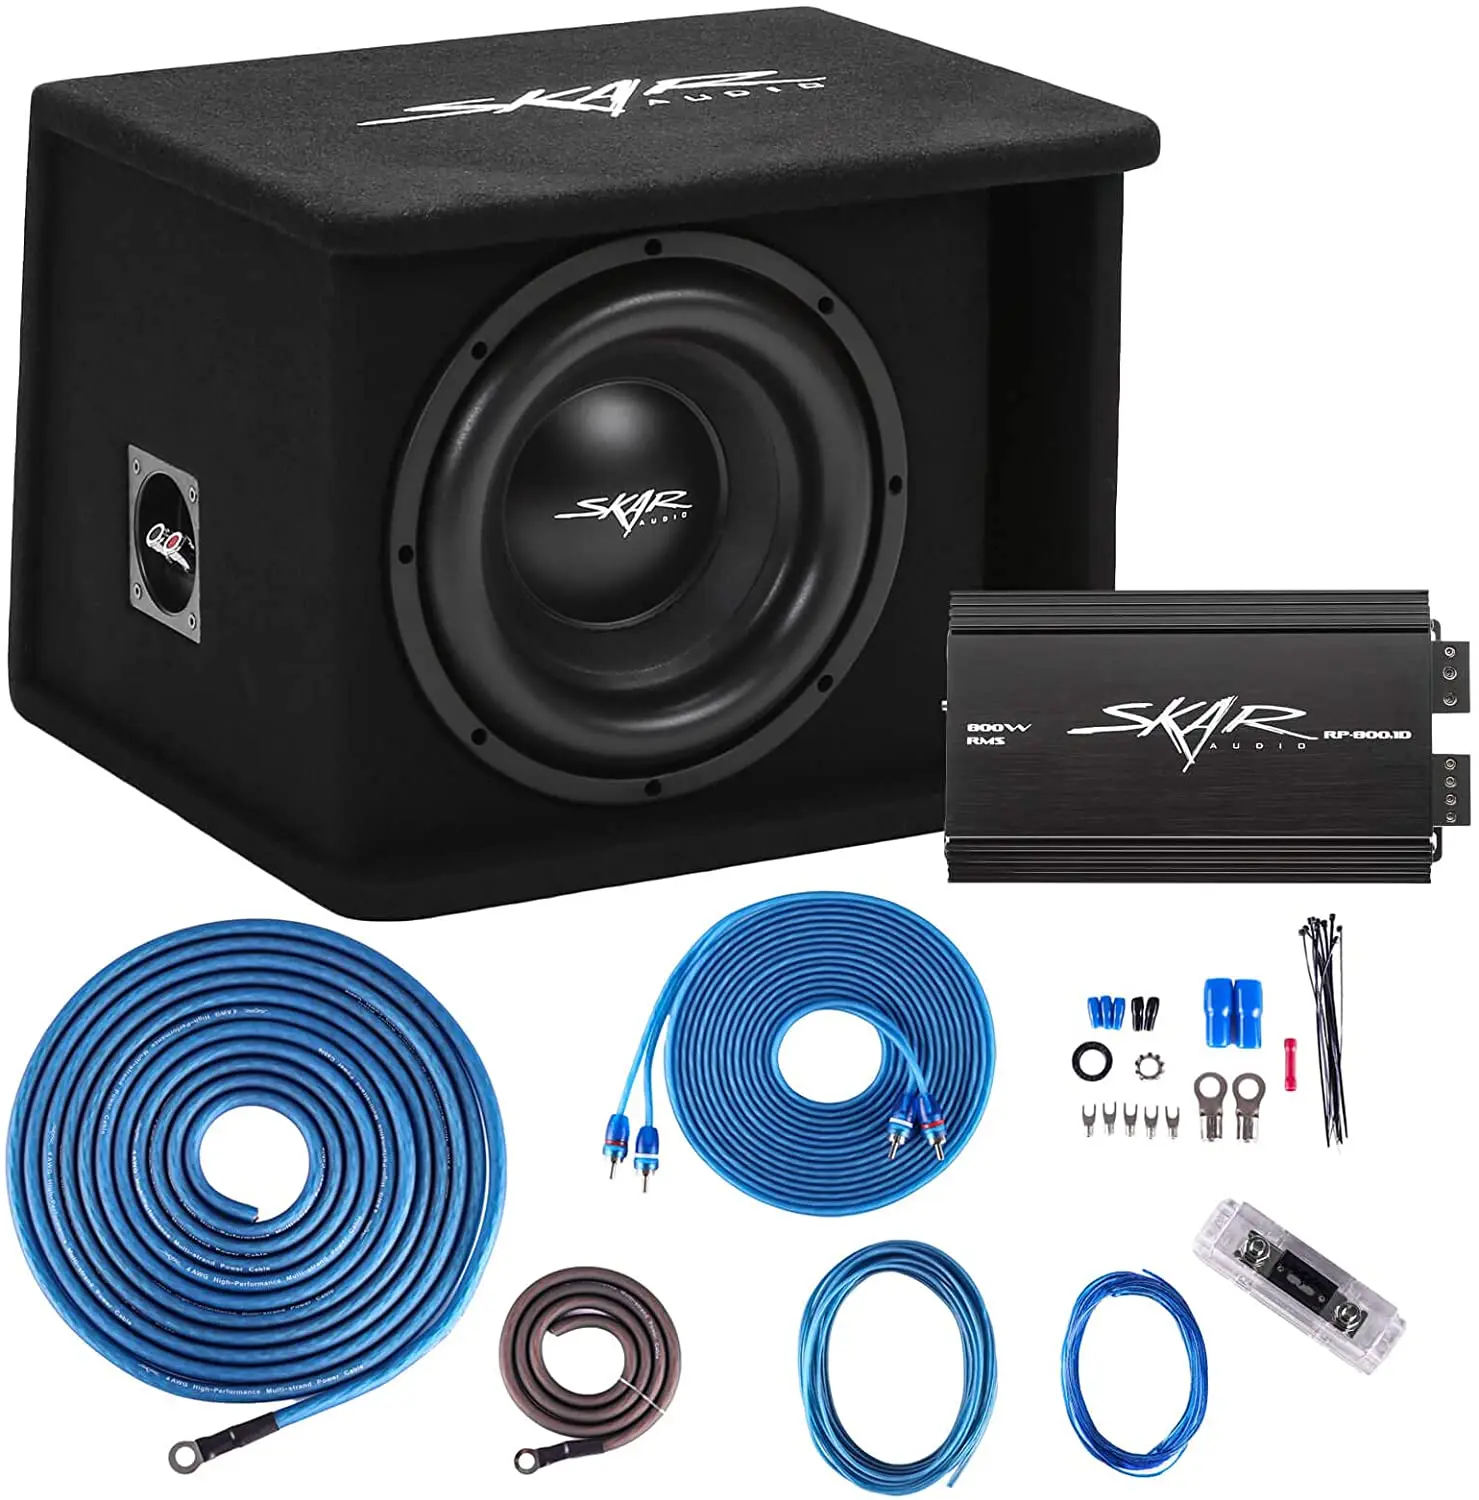 

Skar Audio Single 10 дюймов, полный 1, 200 Вт, серия Sdr, сабвуфер, басопосылка с загруженным металлическим фотоэлементом